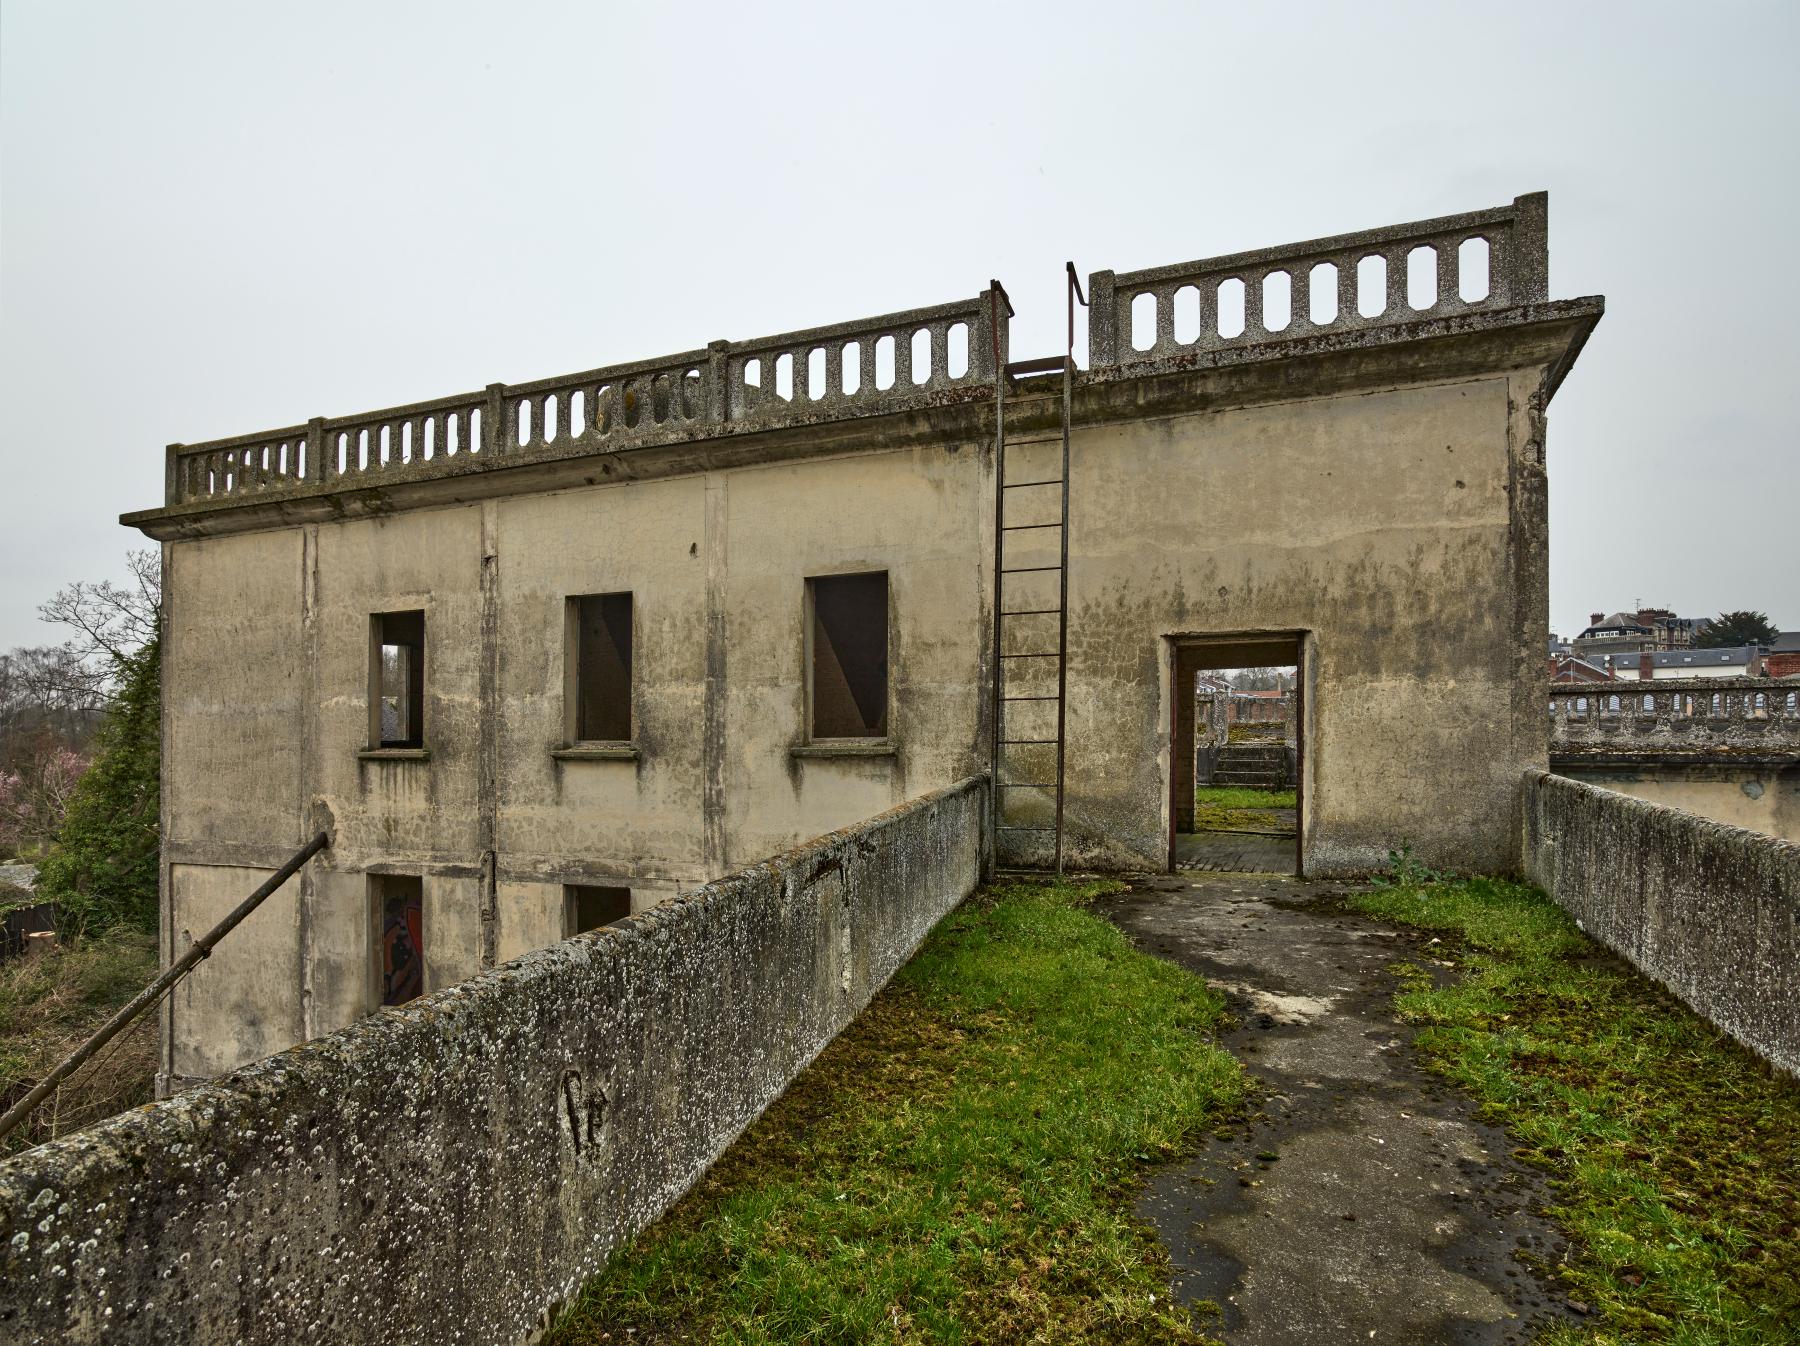 Anciens moulins de la porte de Paris, puis minoterie dite Moulins Damay, puis Grands Moulins de Péronne (détruit)